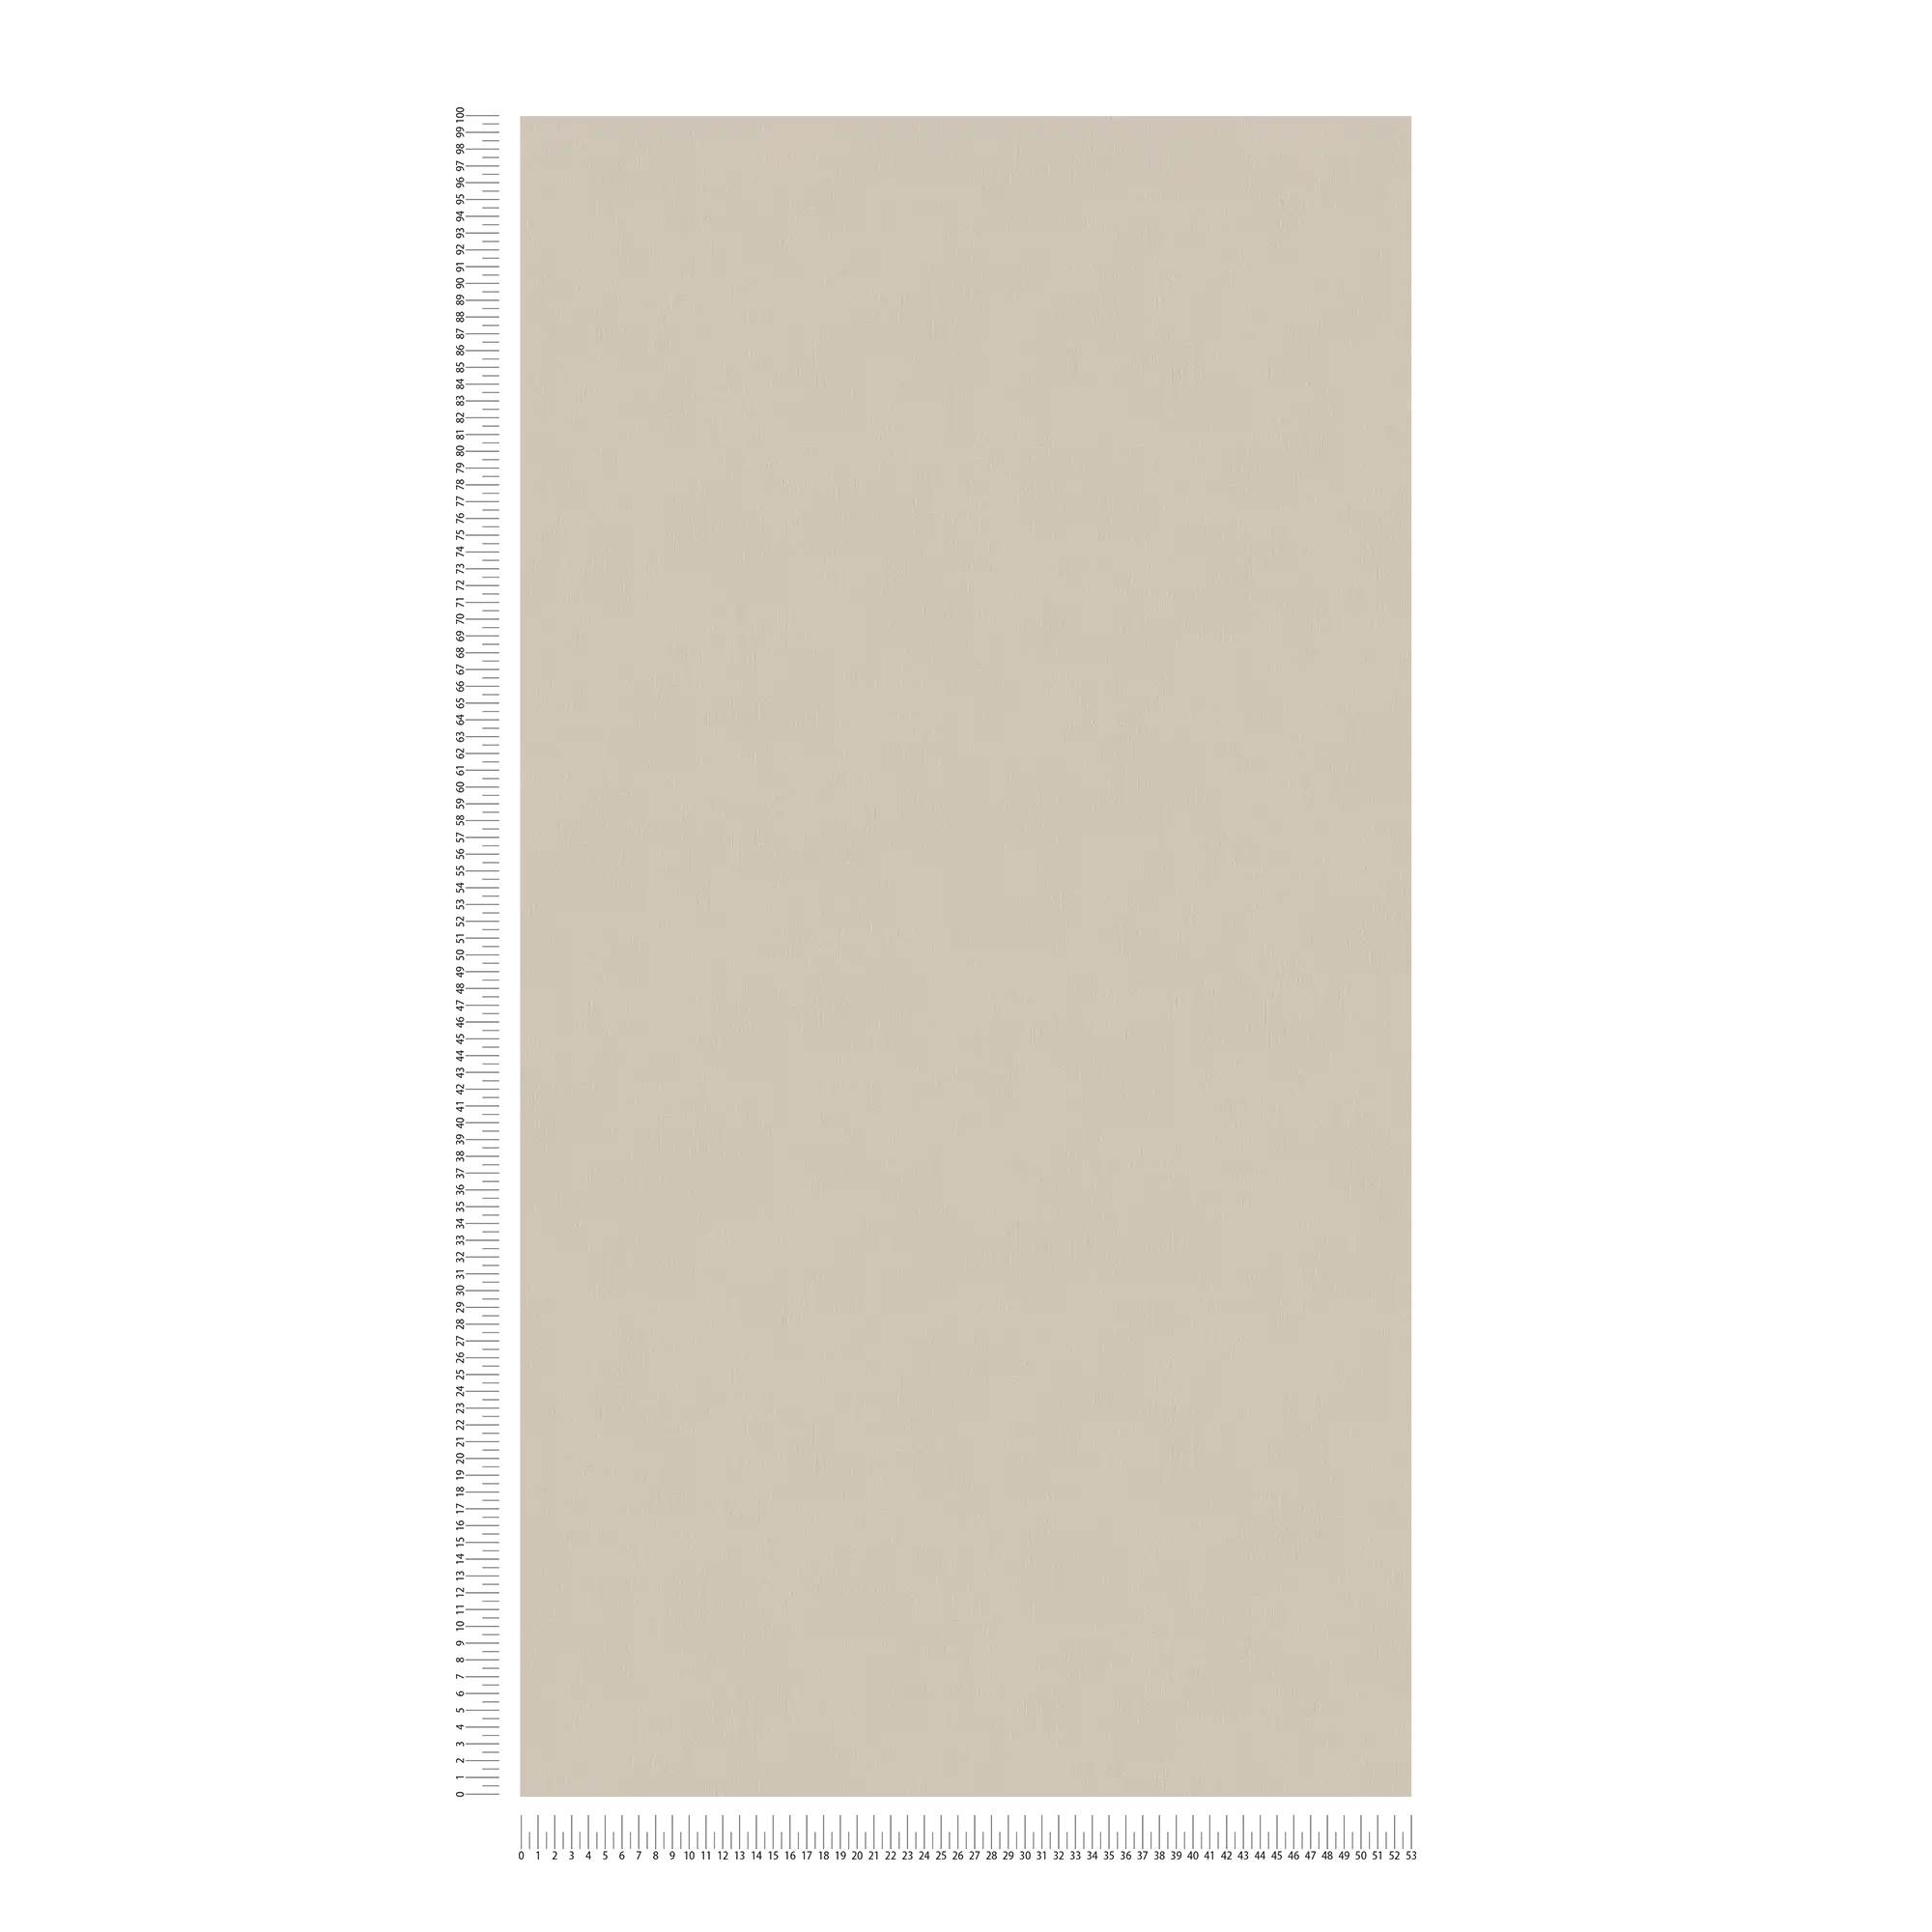             Papel pintado no tejido gris-marrón claro con superficie lisa
        